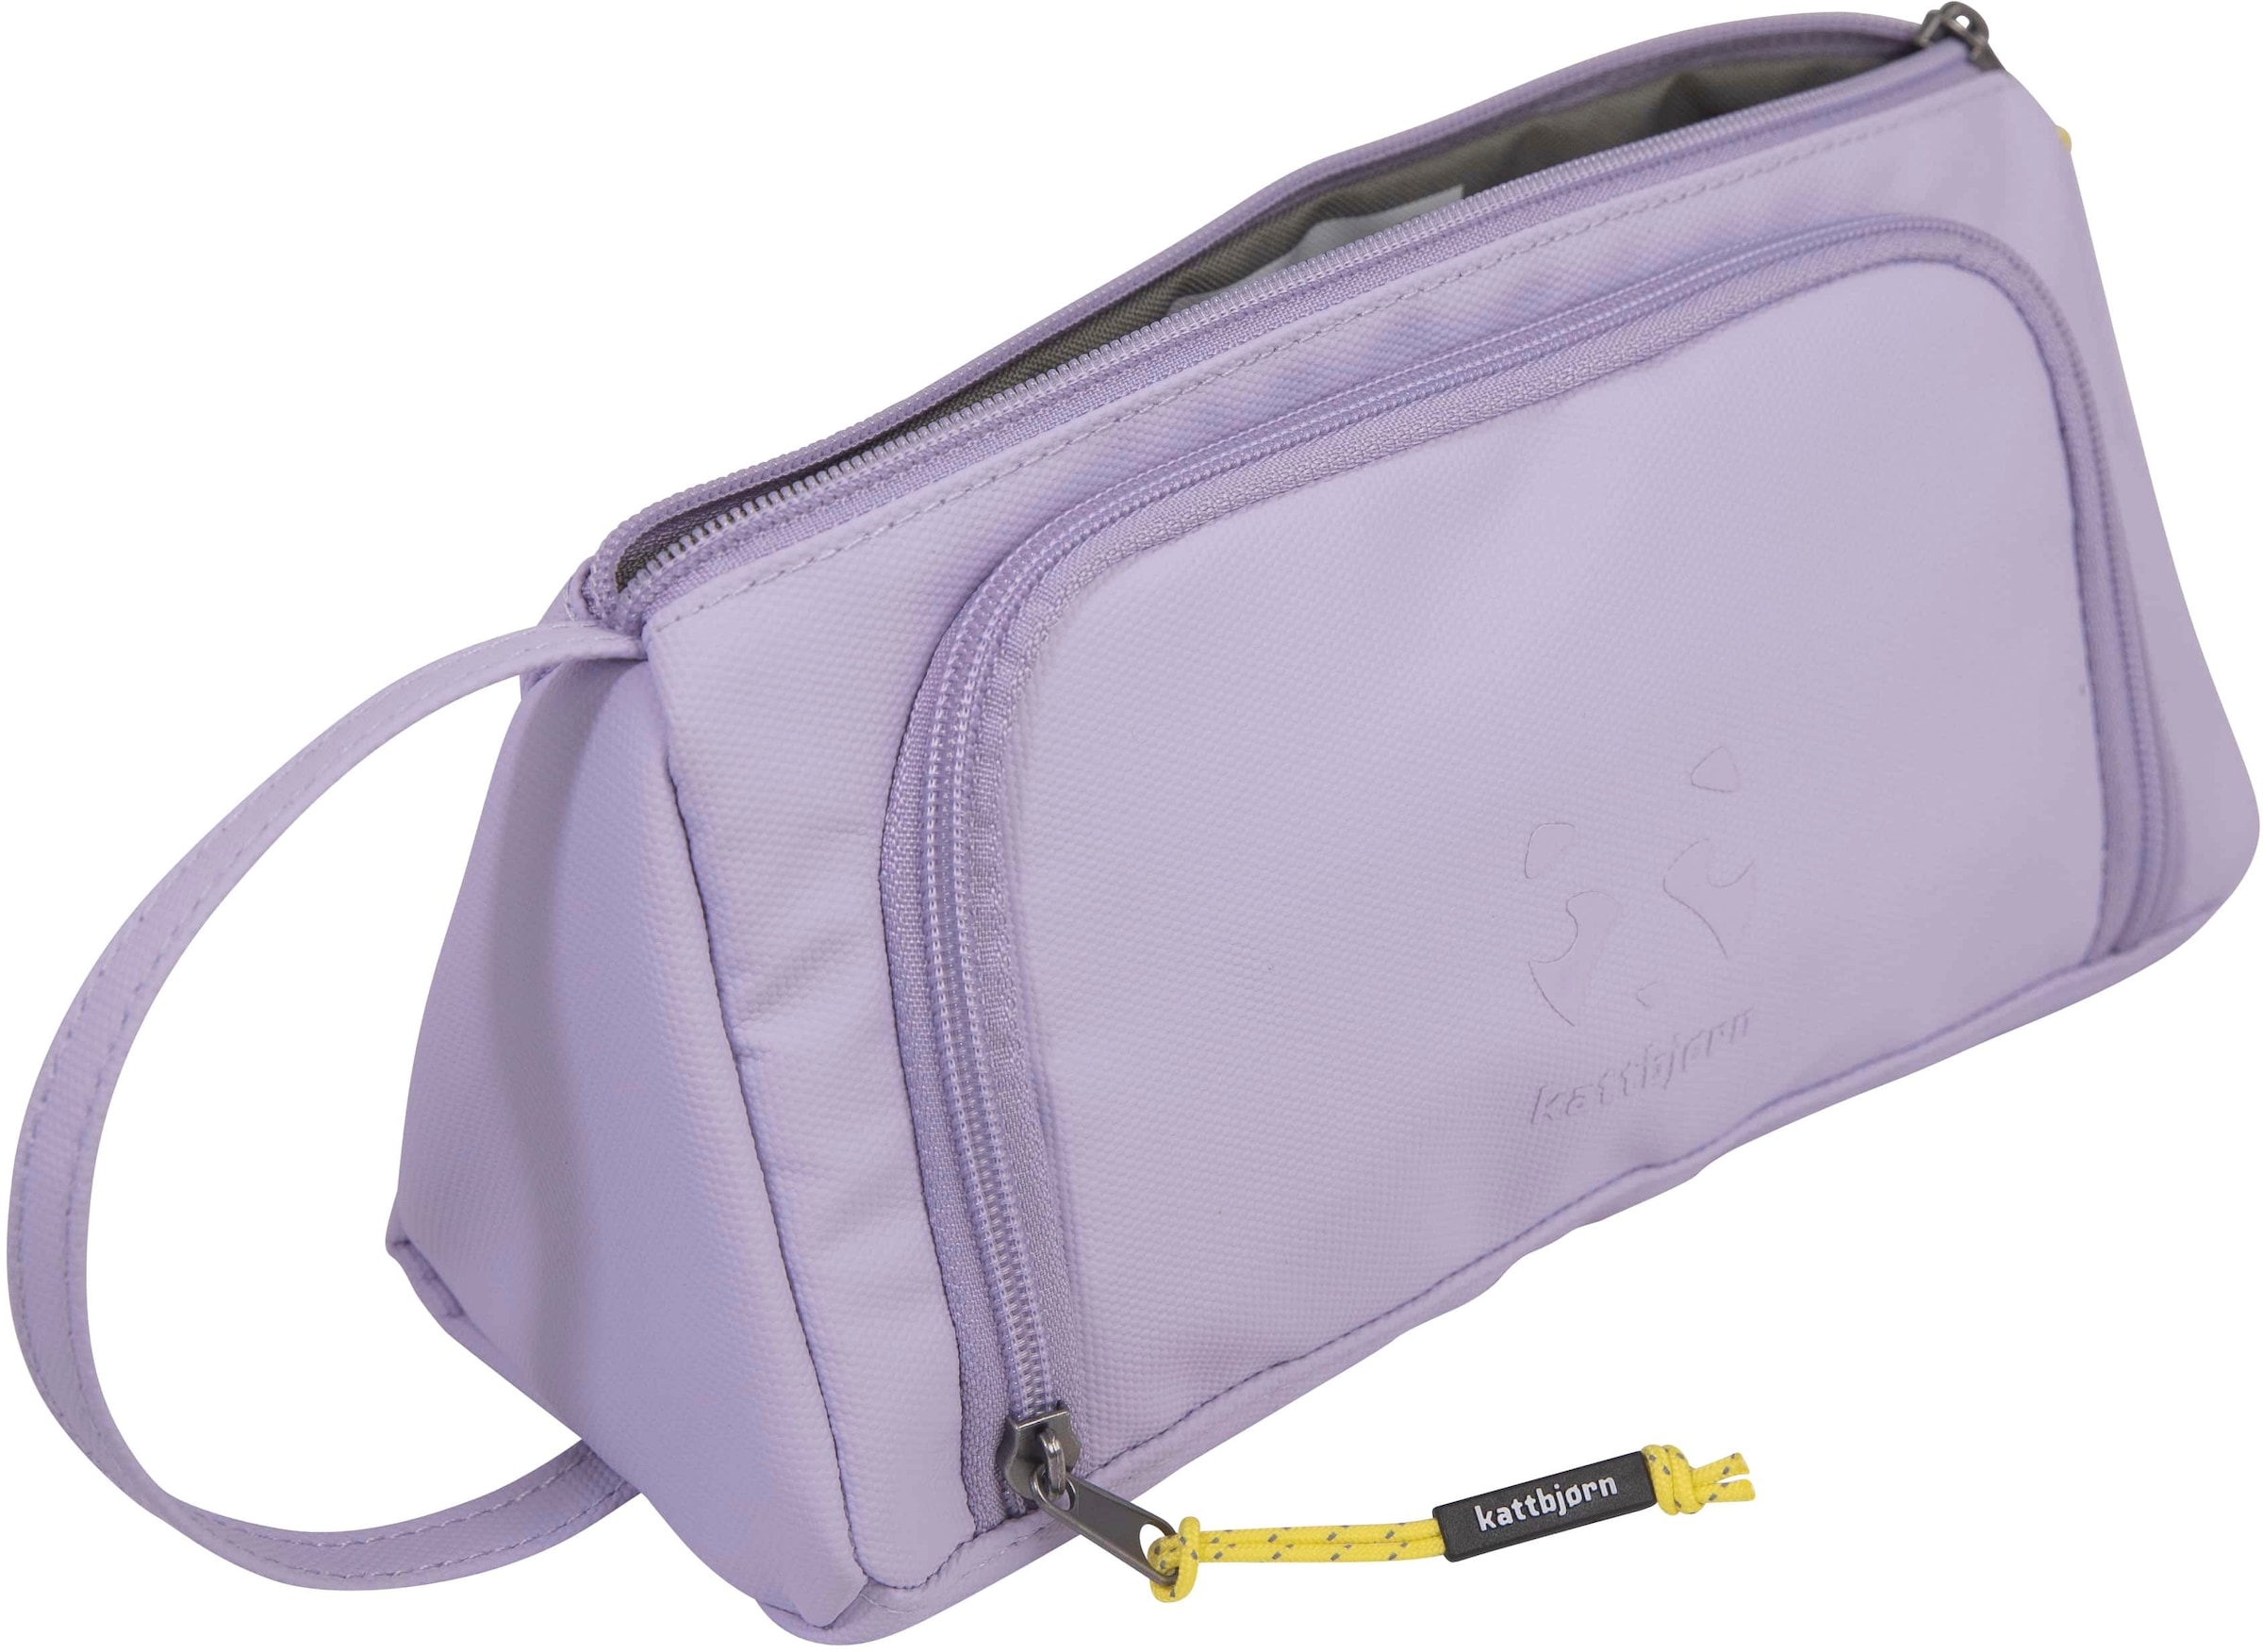 Federtasche »Swag Bag, Purple Power«, alle Innen- und Außenstoffe aus recyceltem PET